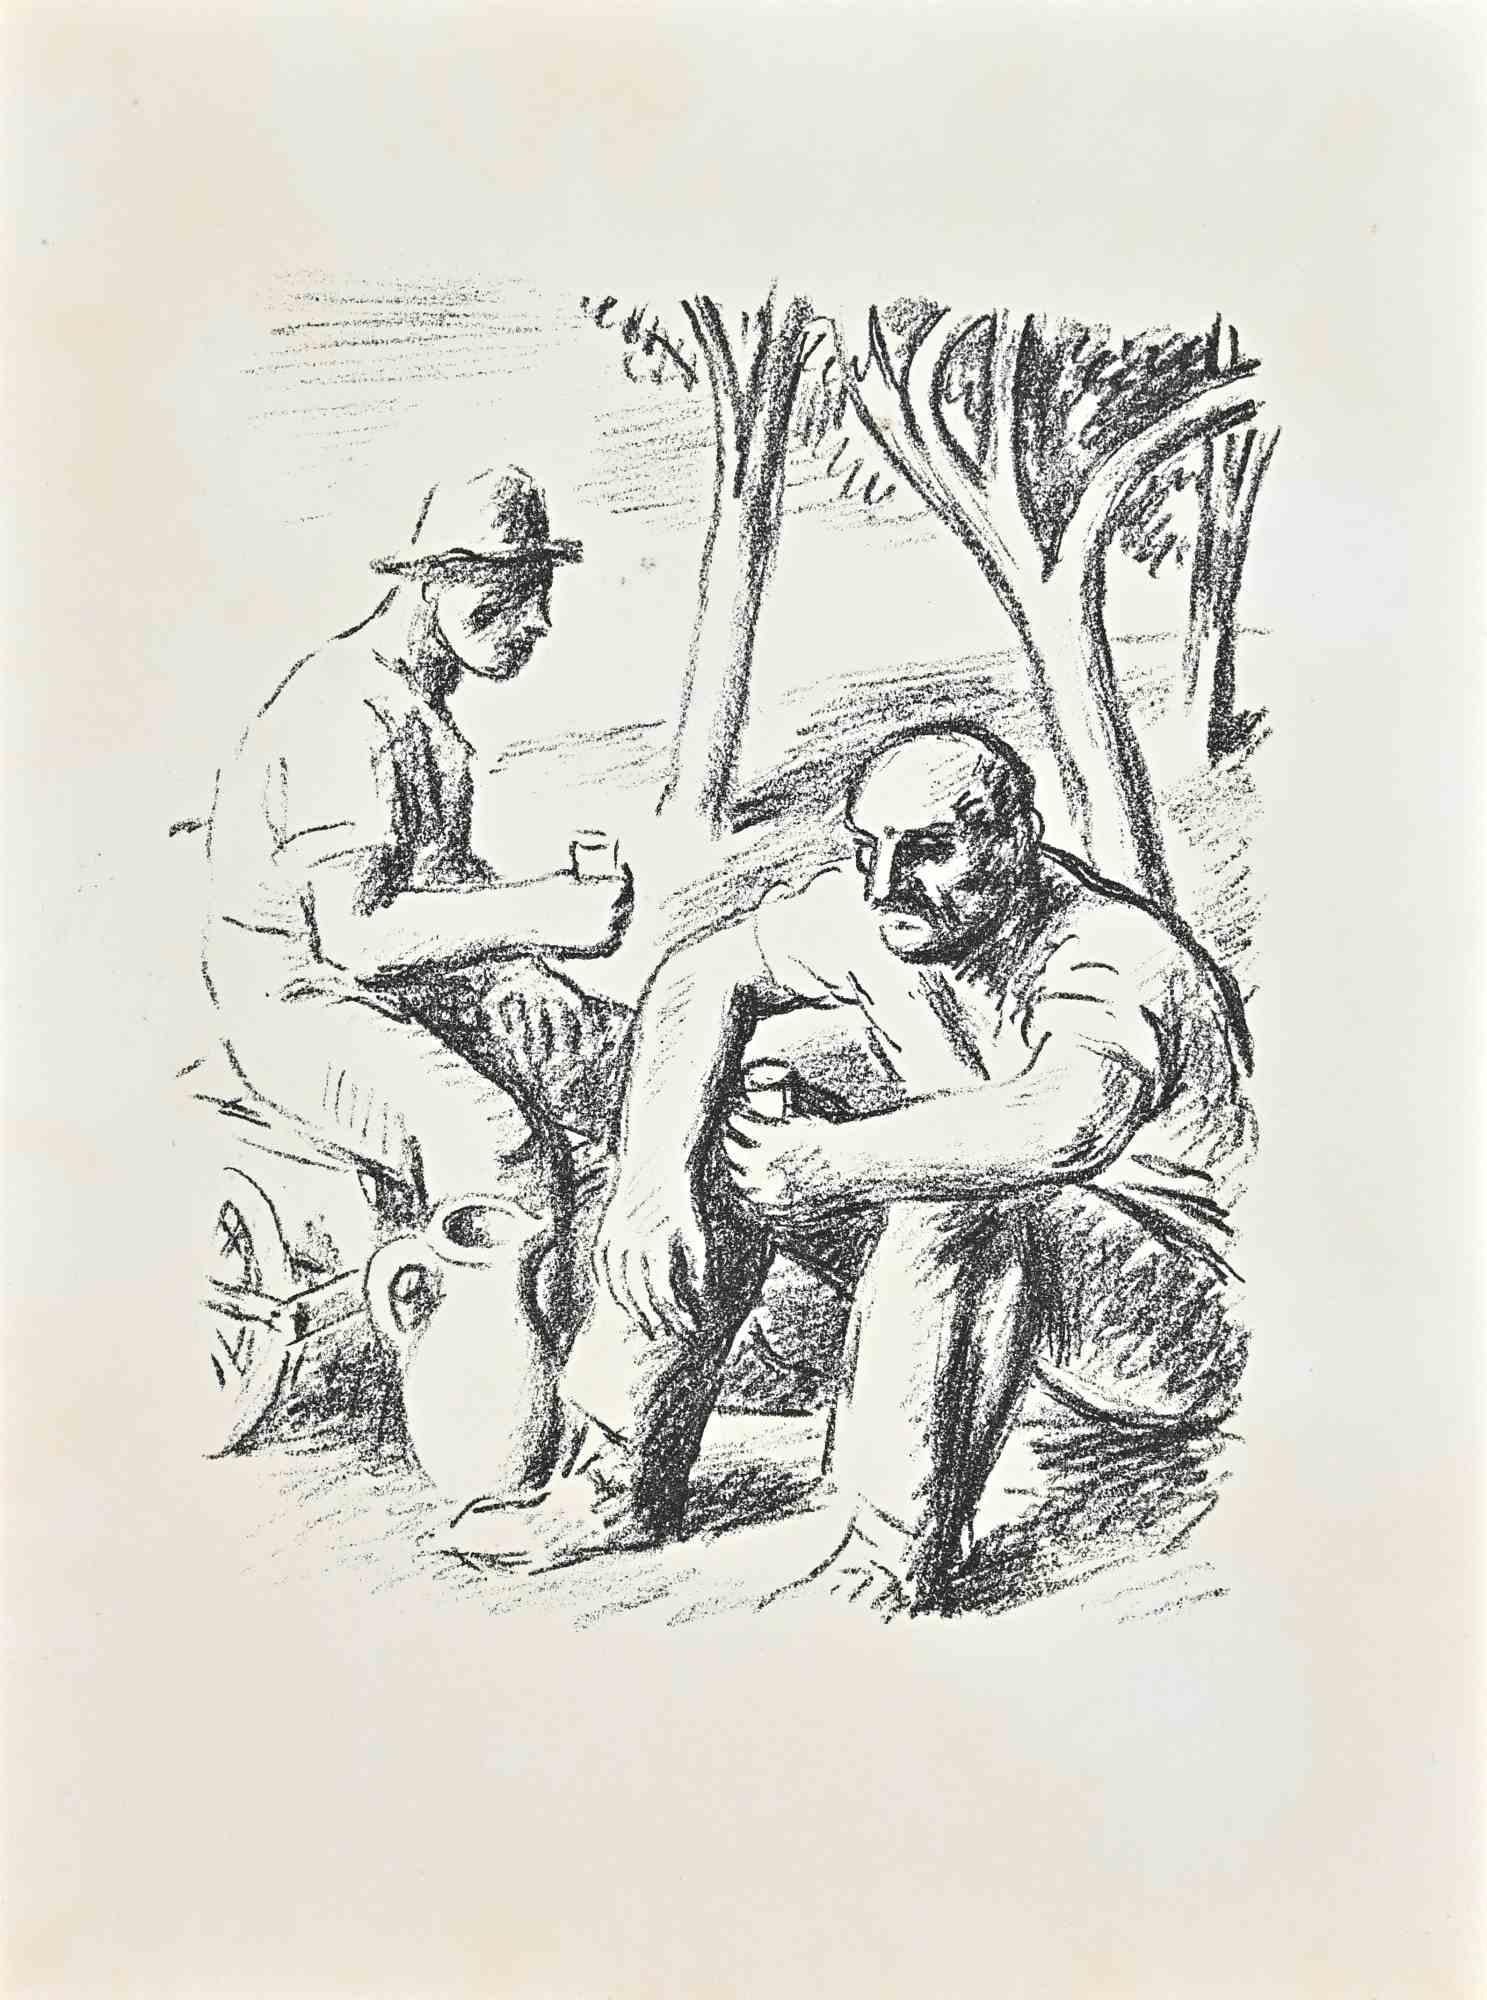 Countryside est une lithographie réalisée par Hans Erni, dans les années 1960. 

Deux hommes, assis côte à côte, se rafraîchissent probablement dans un moment de repos après le travail dans les champs.

32x24 cm, sans cadre.

Bonnes conditions.

